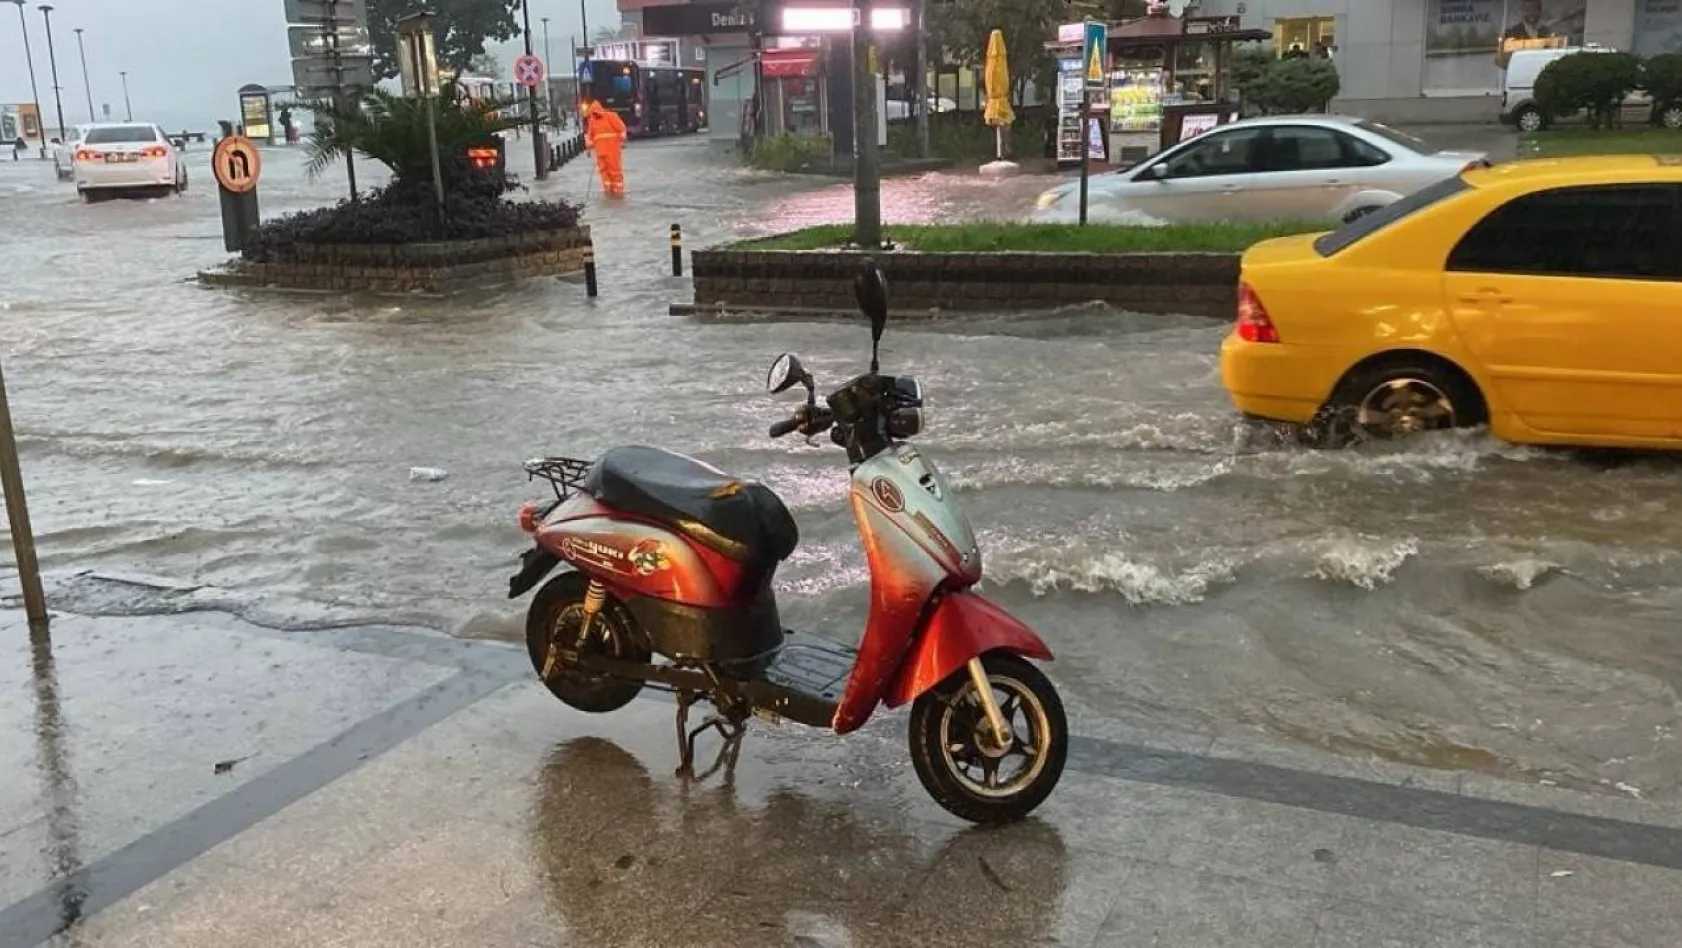 Çanakkale'de motokuryelerin trafiğe çıkması yasaklandı